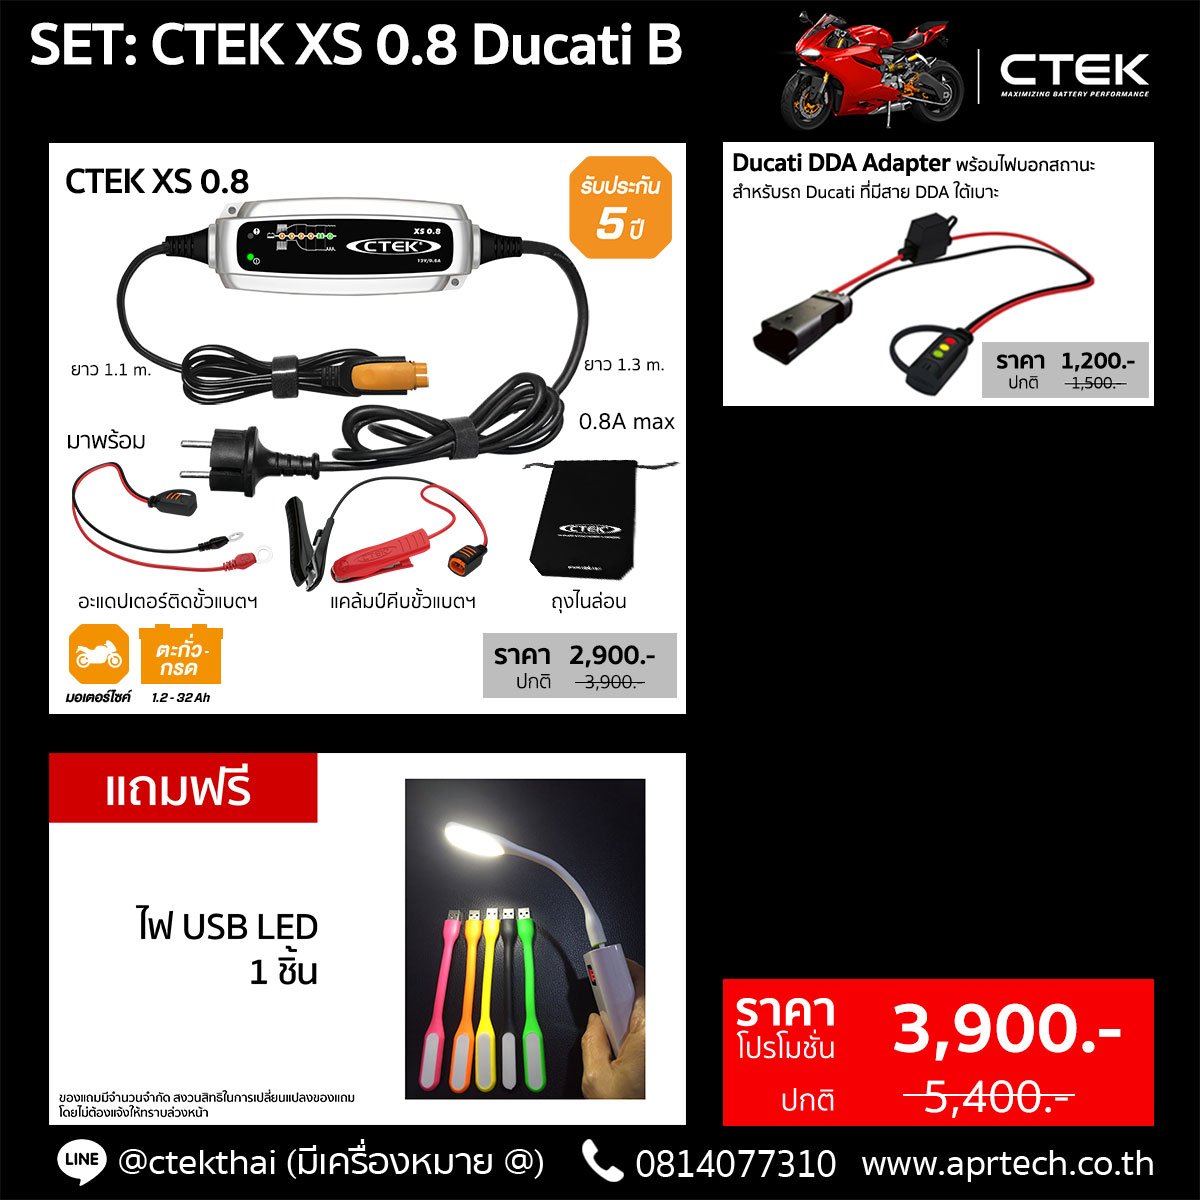 SET CTEK XS 0.8 Ducati B (CTEK XS 0.8 + Ducati DDA Adapter)